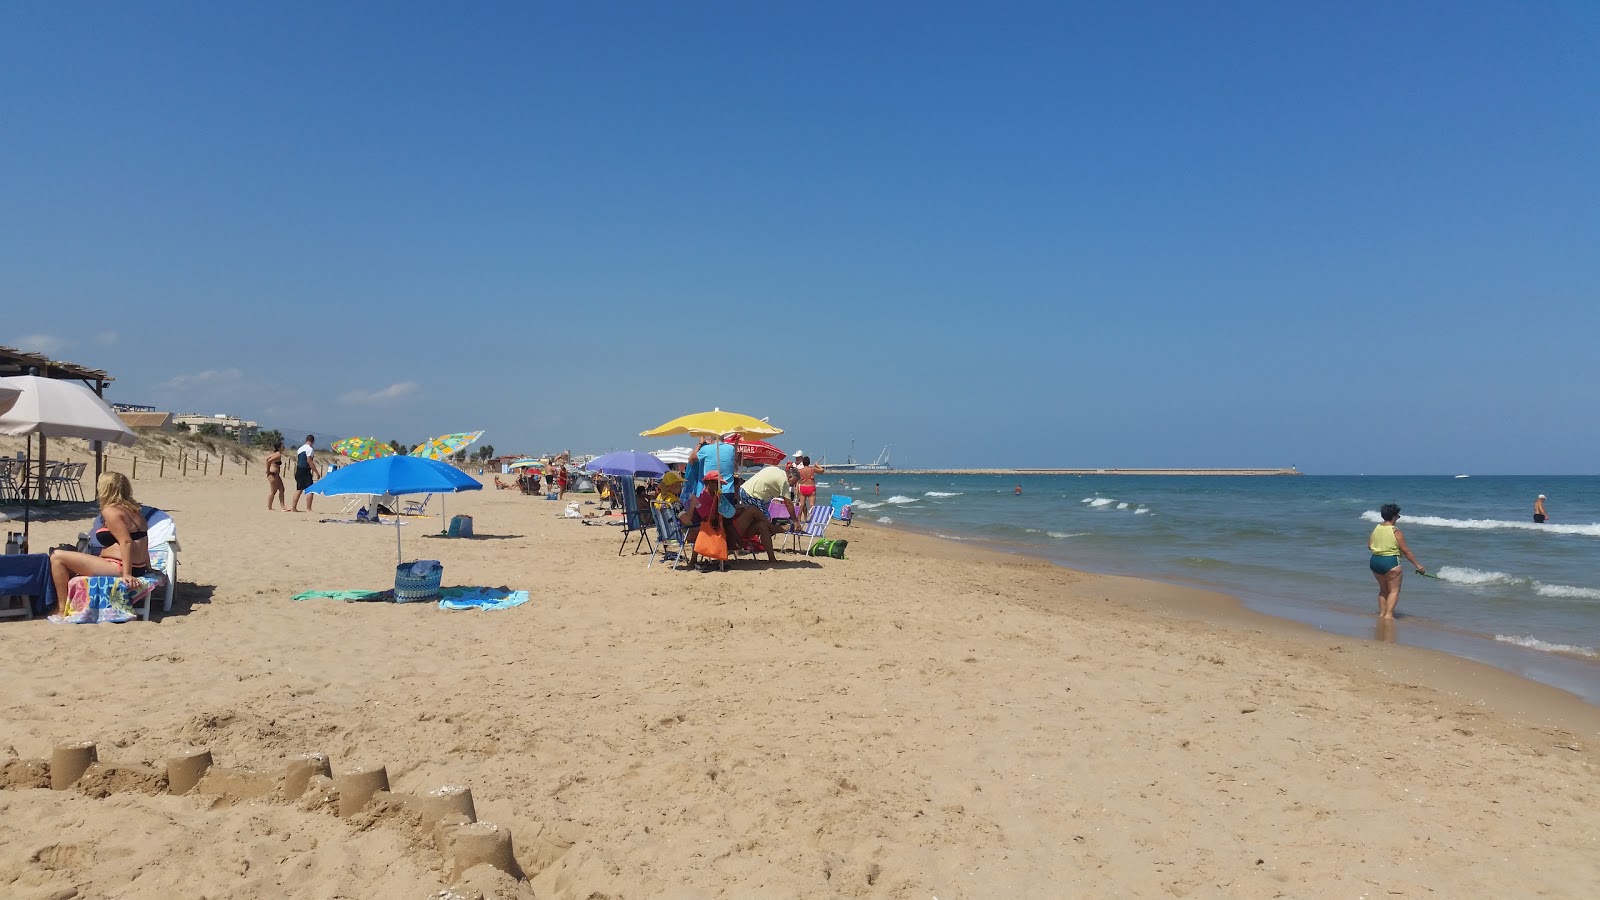 Daimus Plajı'in fotoğrafı parlak kum yüzey ile